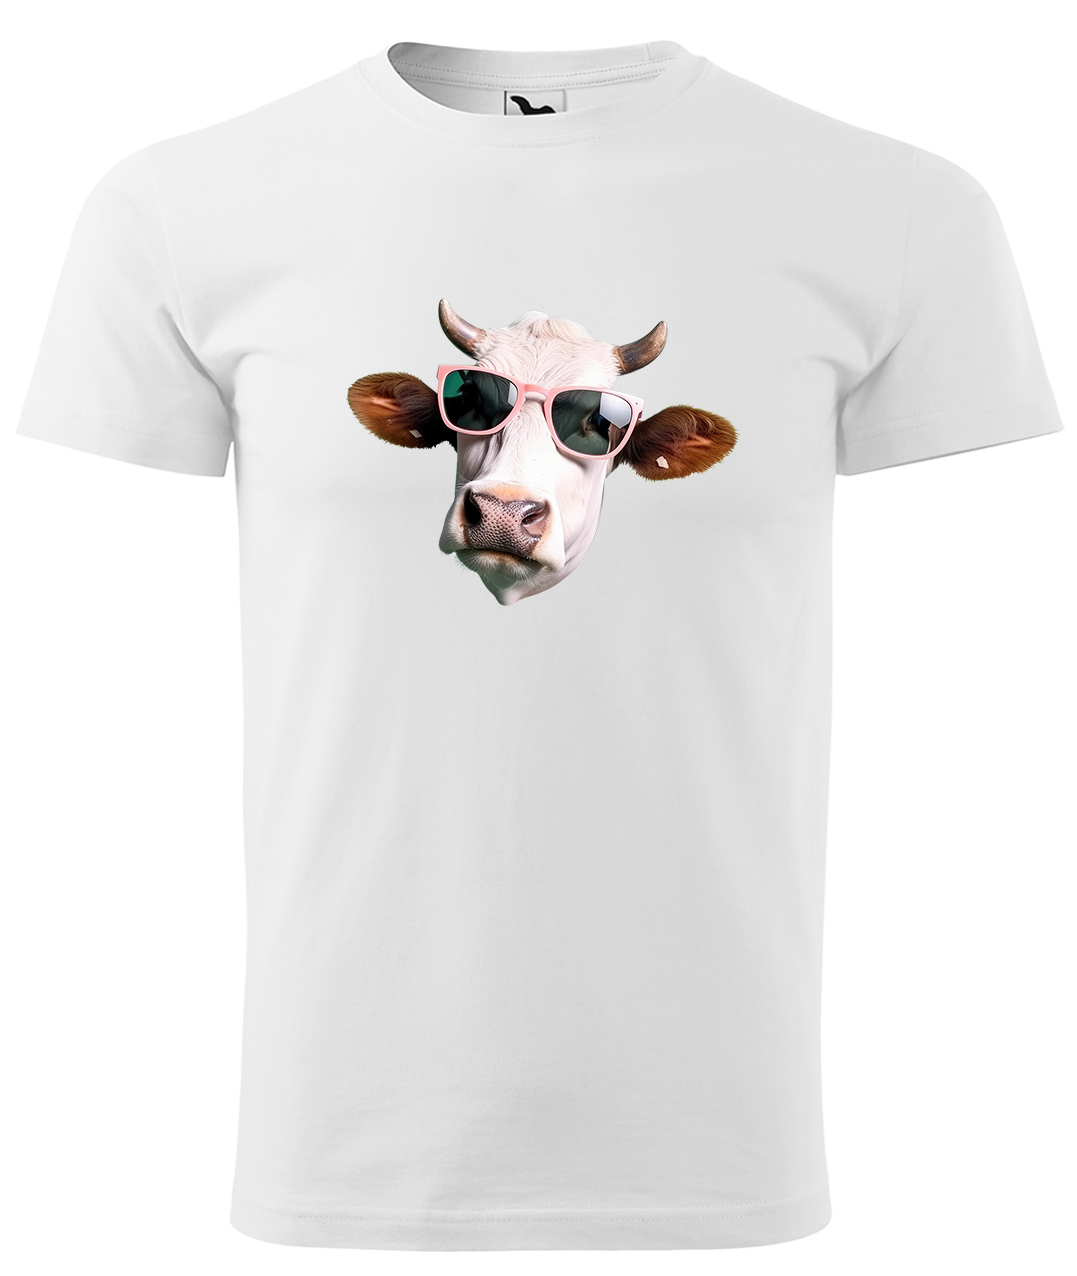 Dětské tričko s krávou - Kráva v brýlích Velikost: 4 roky / 110 cm, Barva: Bílá (00), Délka rukávu: Krátký rukáv